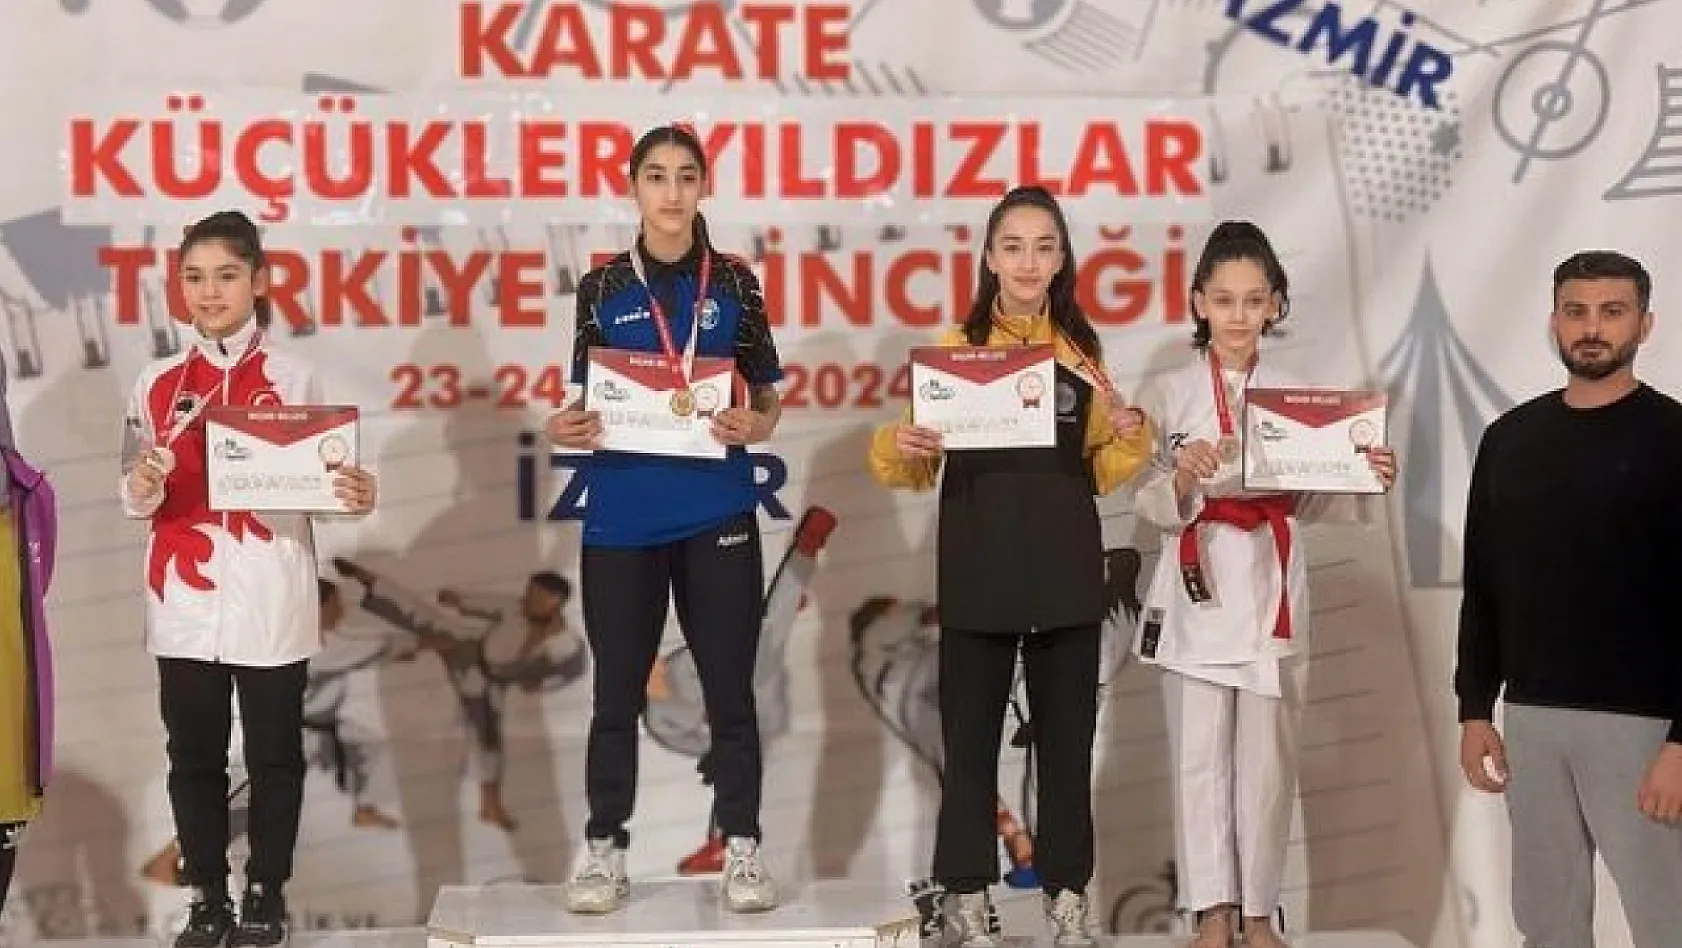 Kayserili karateciler, İzmir'de madalya yağdırdı!